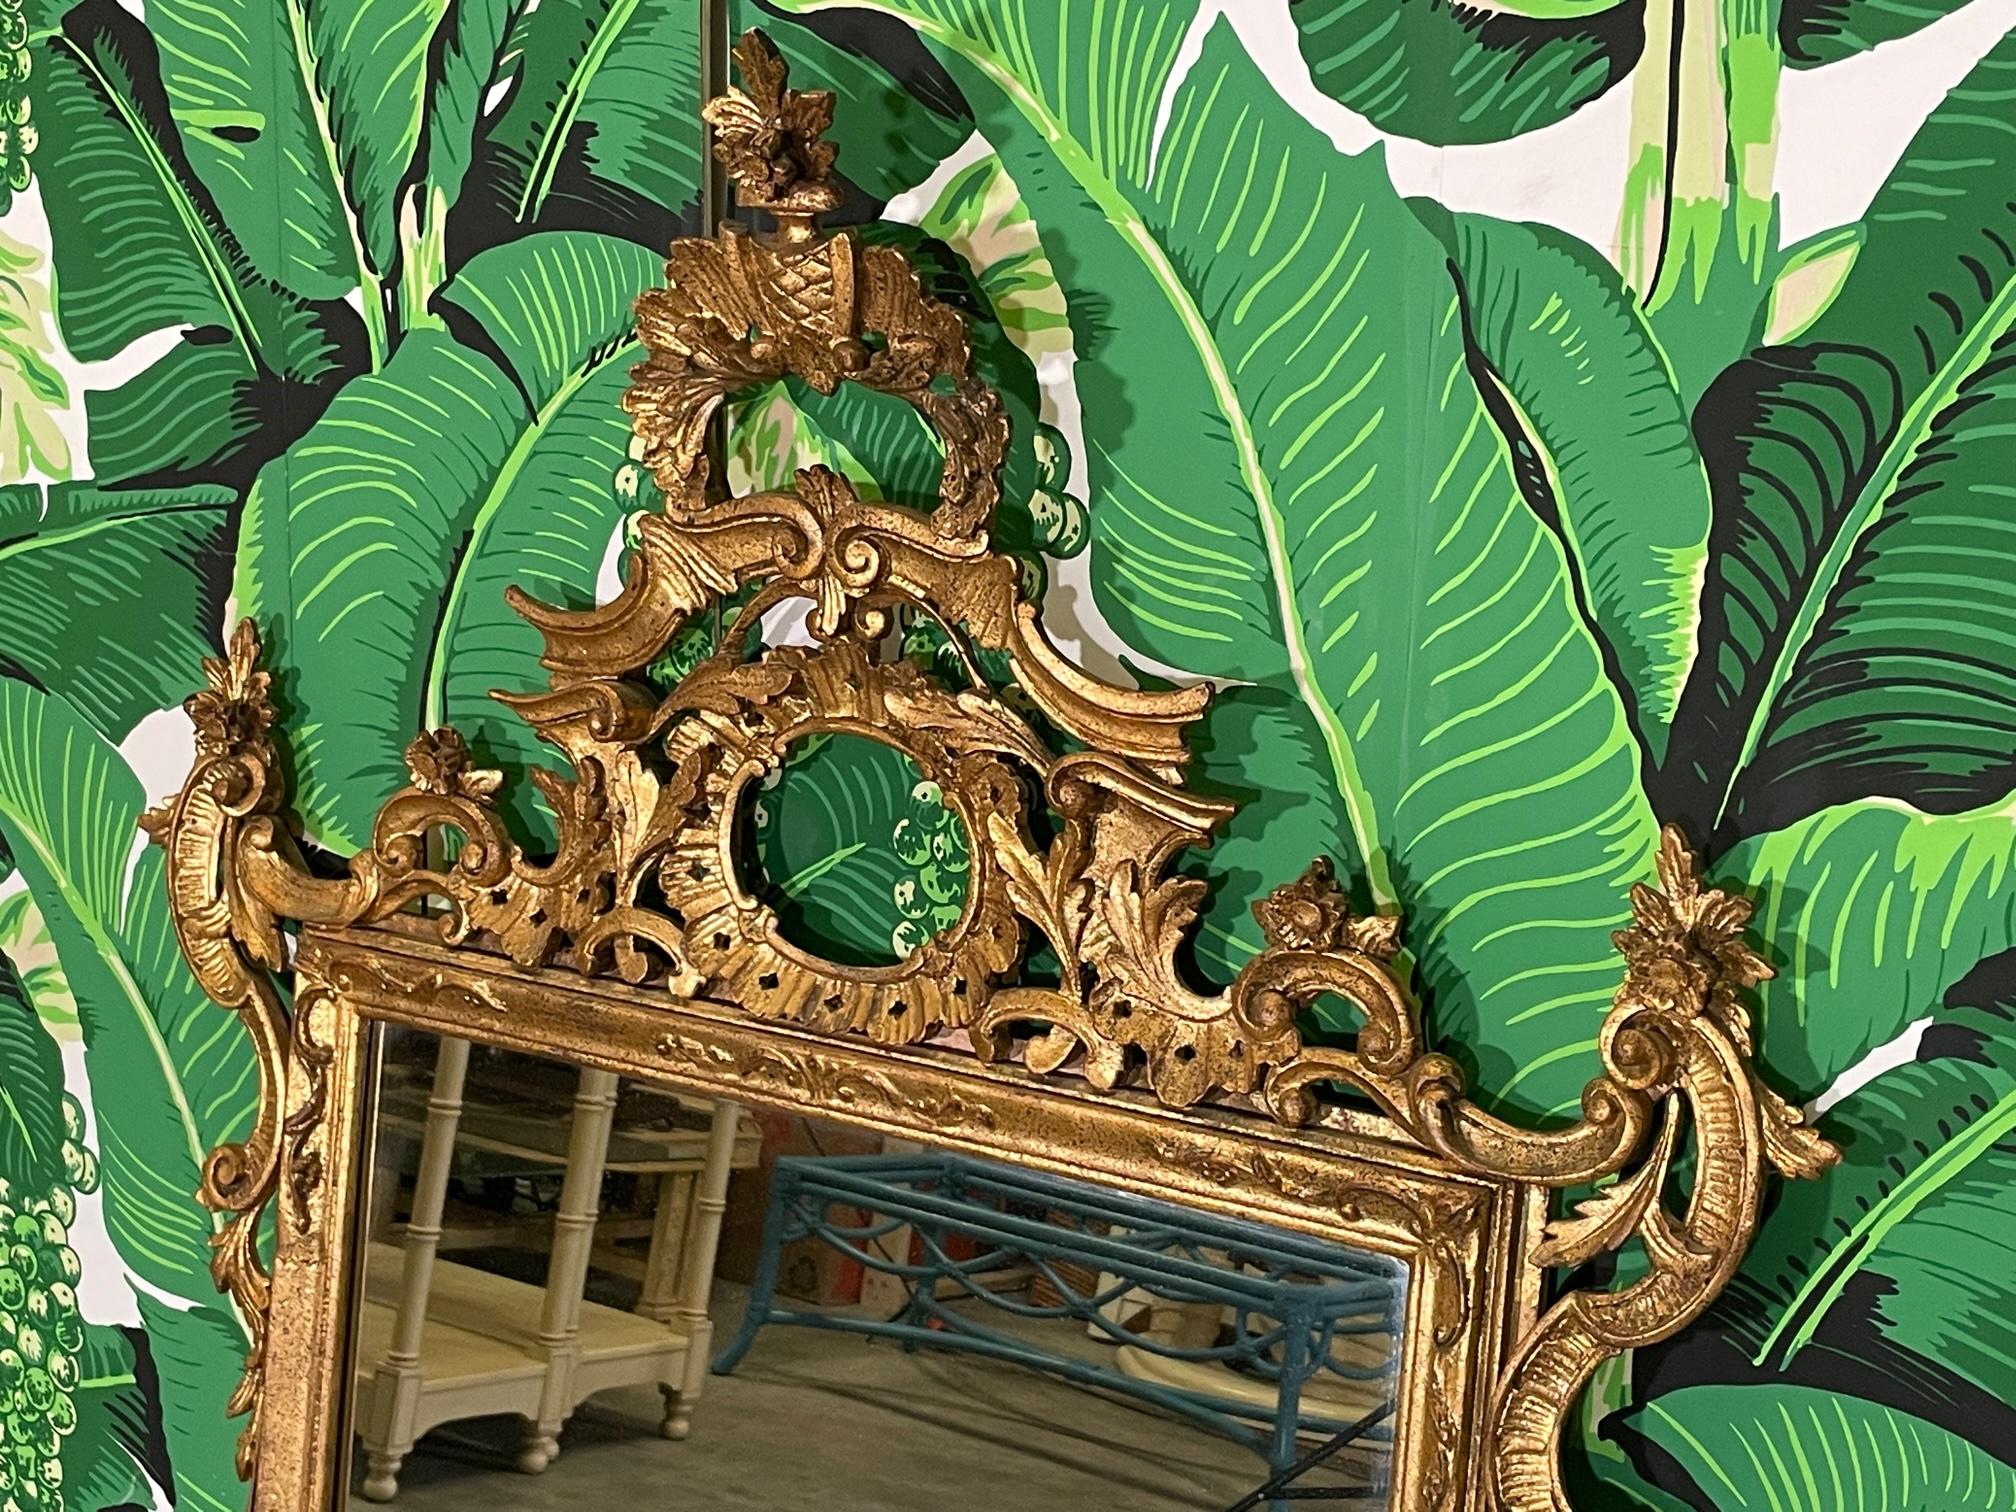 Großer Wandspiegel im Rokokostil mit originaler Vergoldung und einem offenen geschnitzten Rahmen mit Blumen und Akanthusblättern. Gekennzeichnet mit Italy Tag. Guter Zustand mit altersbedingten Unvollkommenheiten, siehe Fotos für